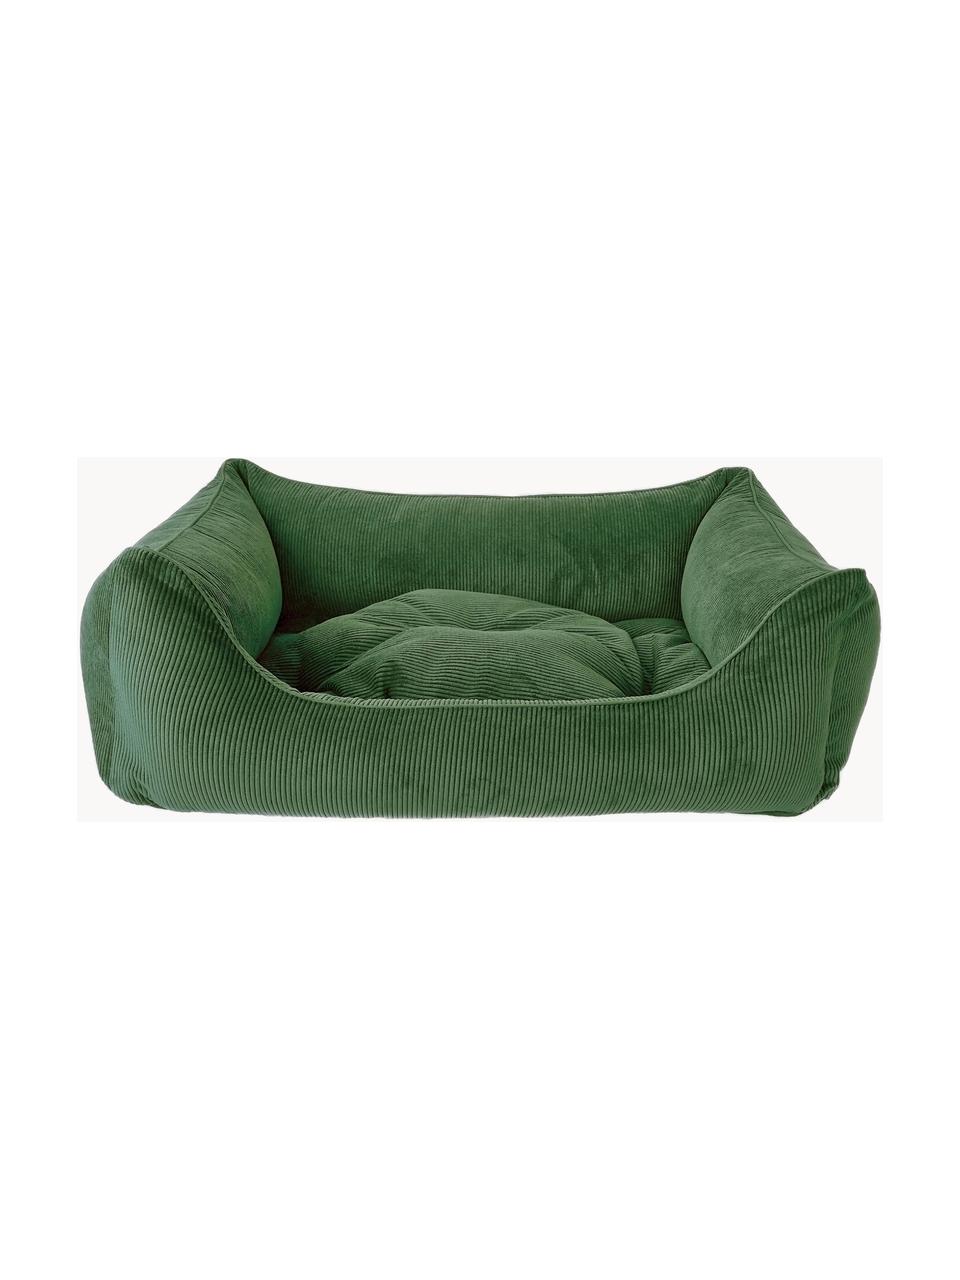 Cord-Hundebett Relax, verschiedene Grössen, Bezug: Cord (100 % Polyester) De, Dunkelgrün, B 90 x T 60 cm